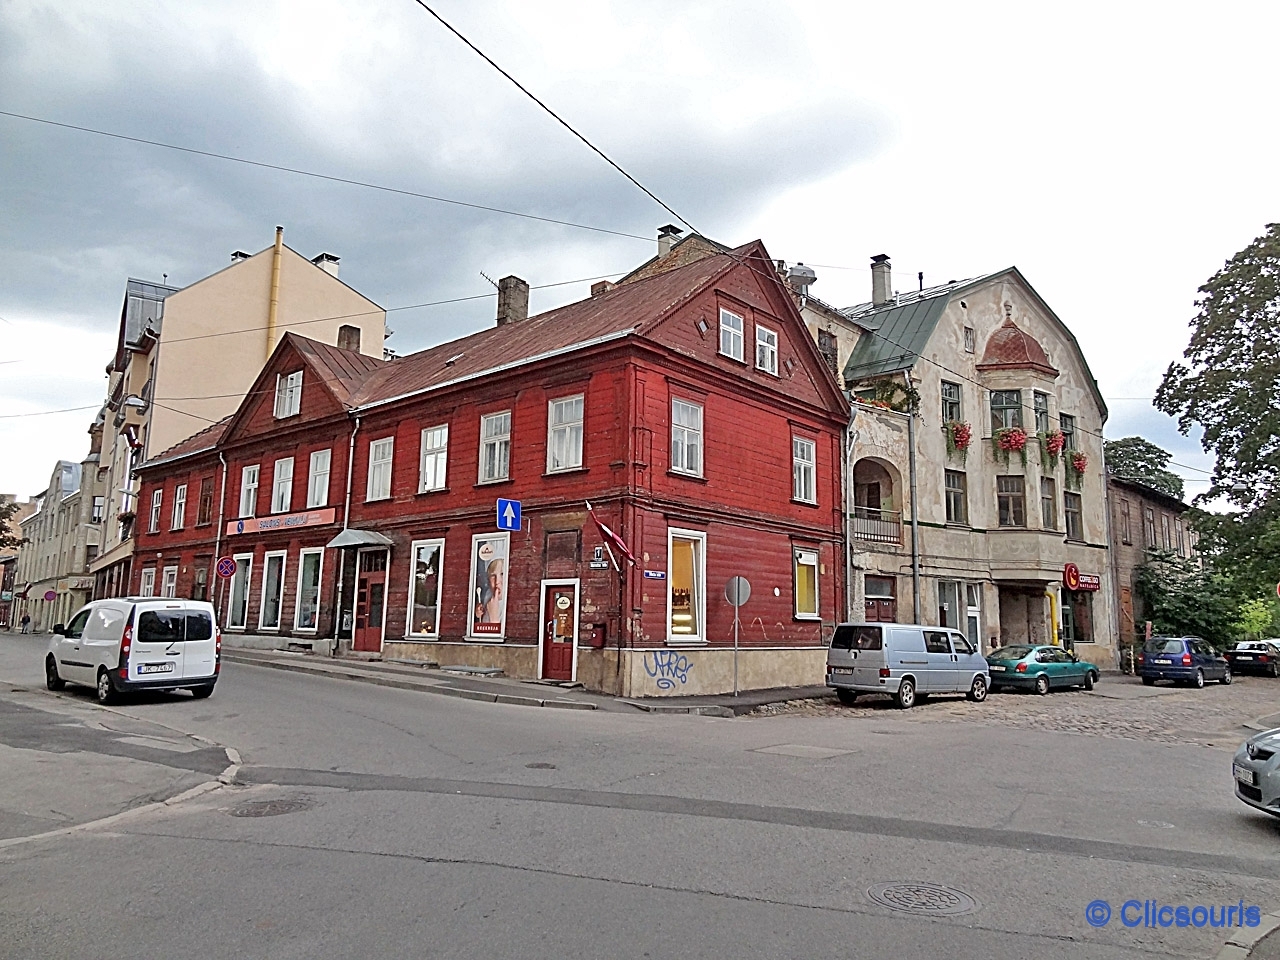 Riga Rive gauche Daugava